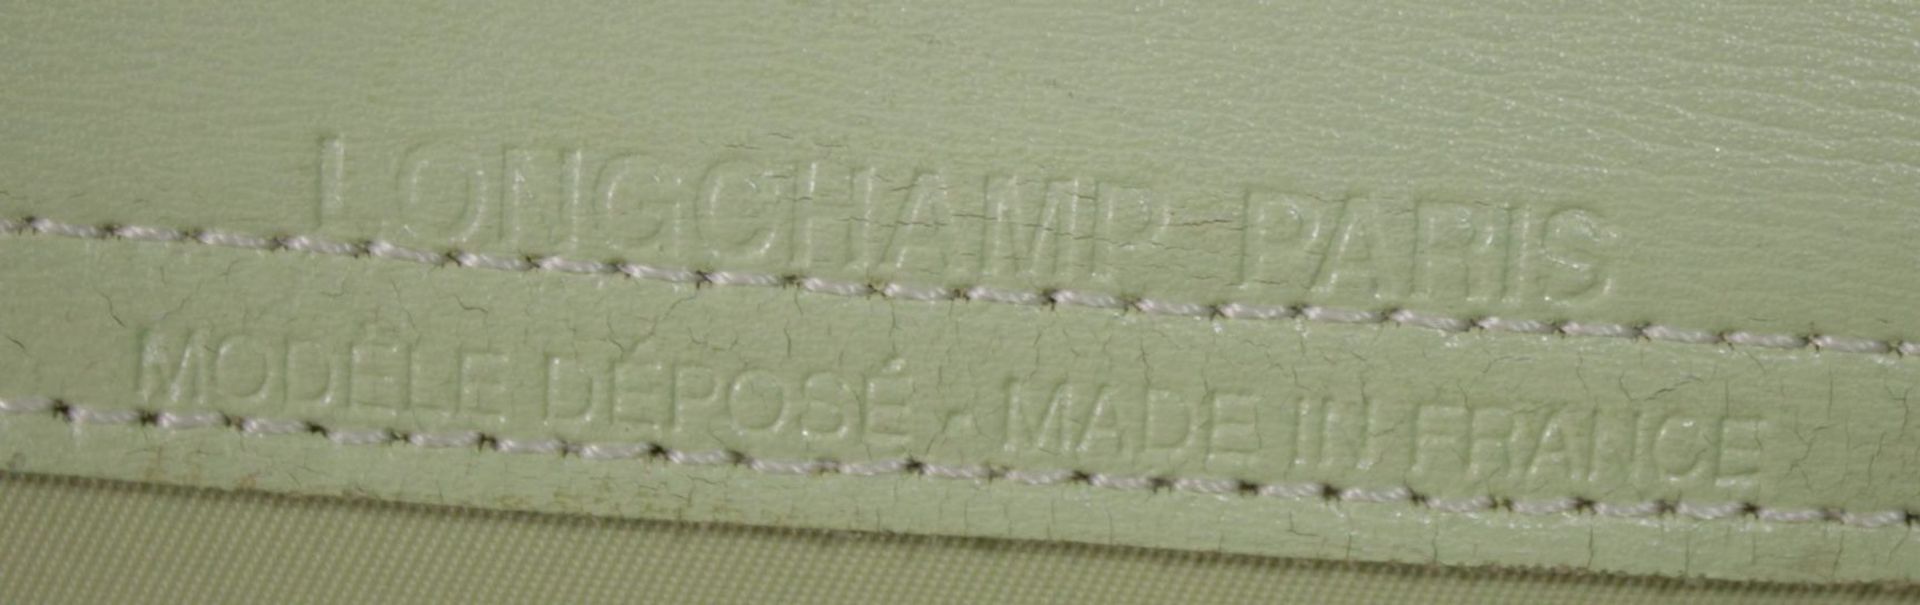 Longchamp-Tasche, leichte Tragespuren, Mintgrün, 26 x 39cm.  - Bild 4 aus 6